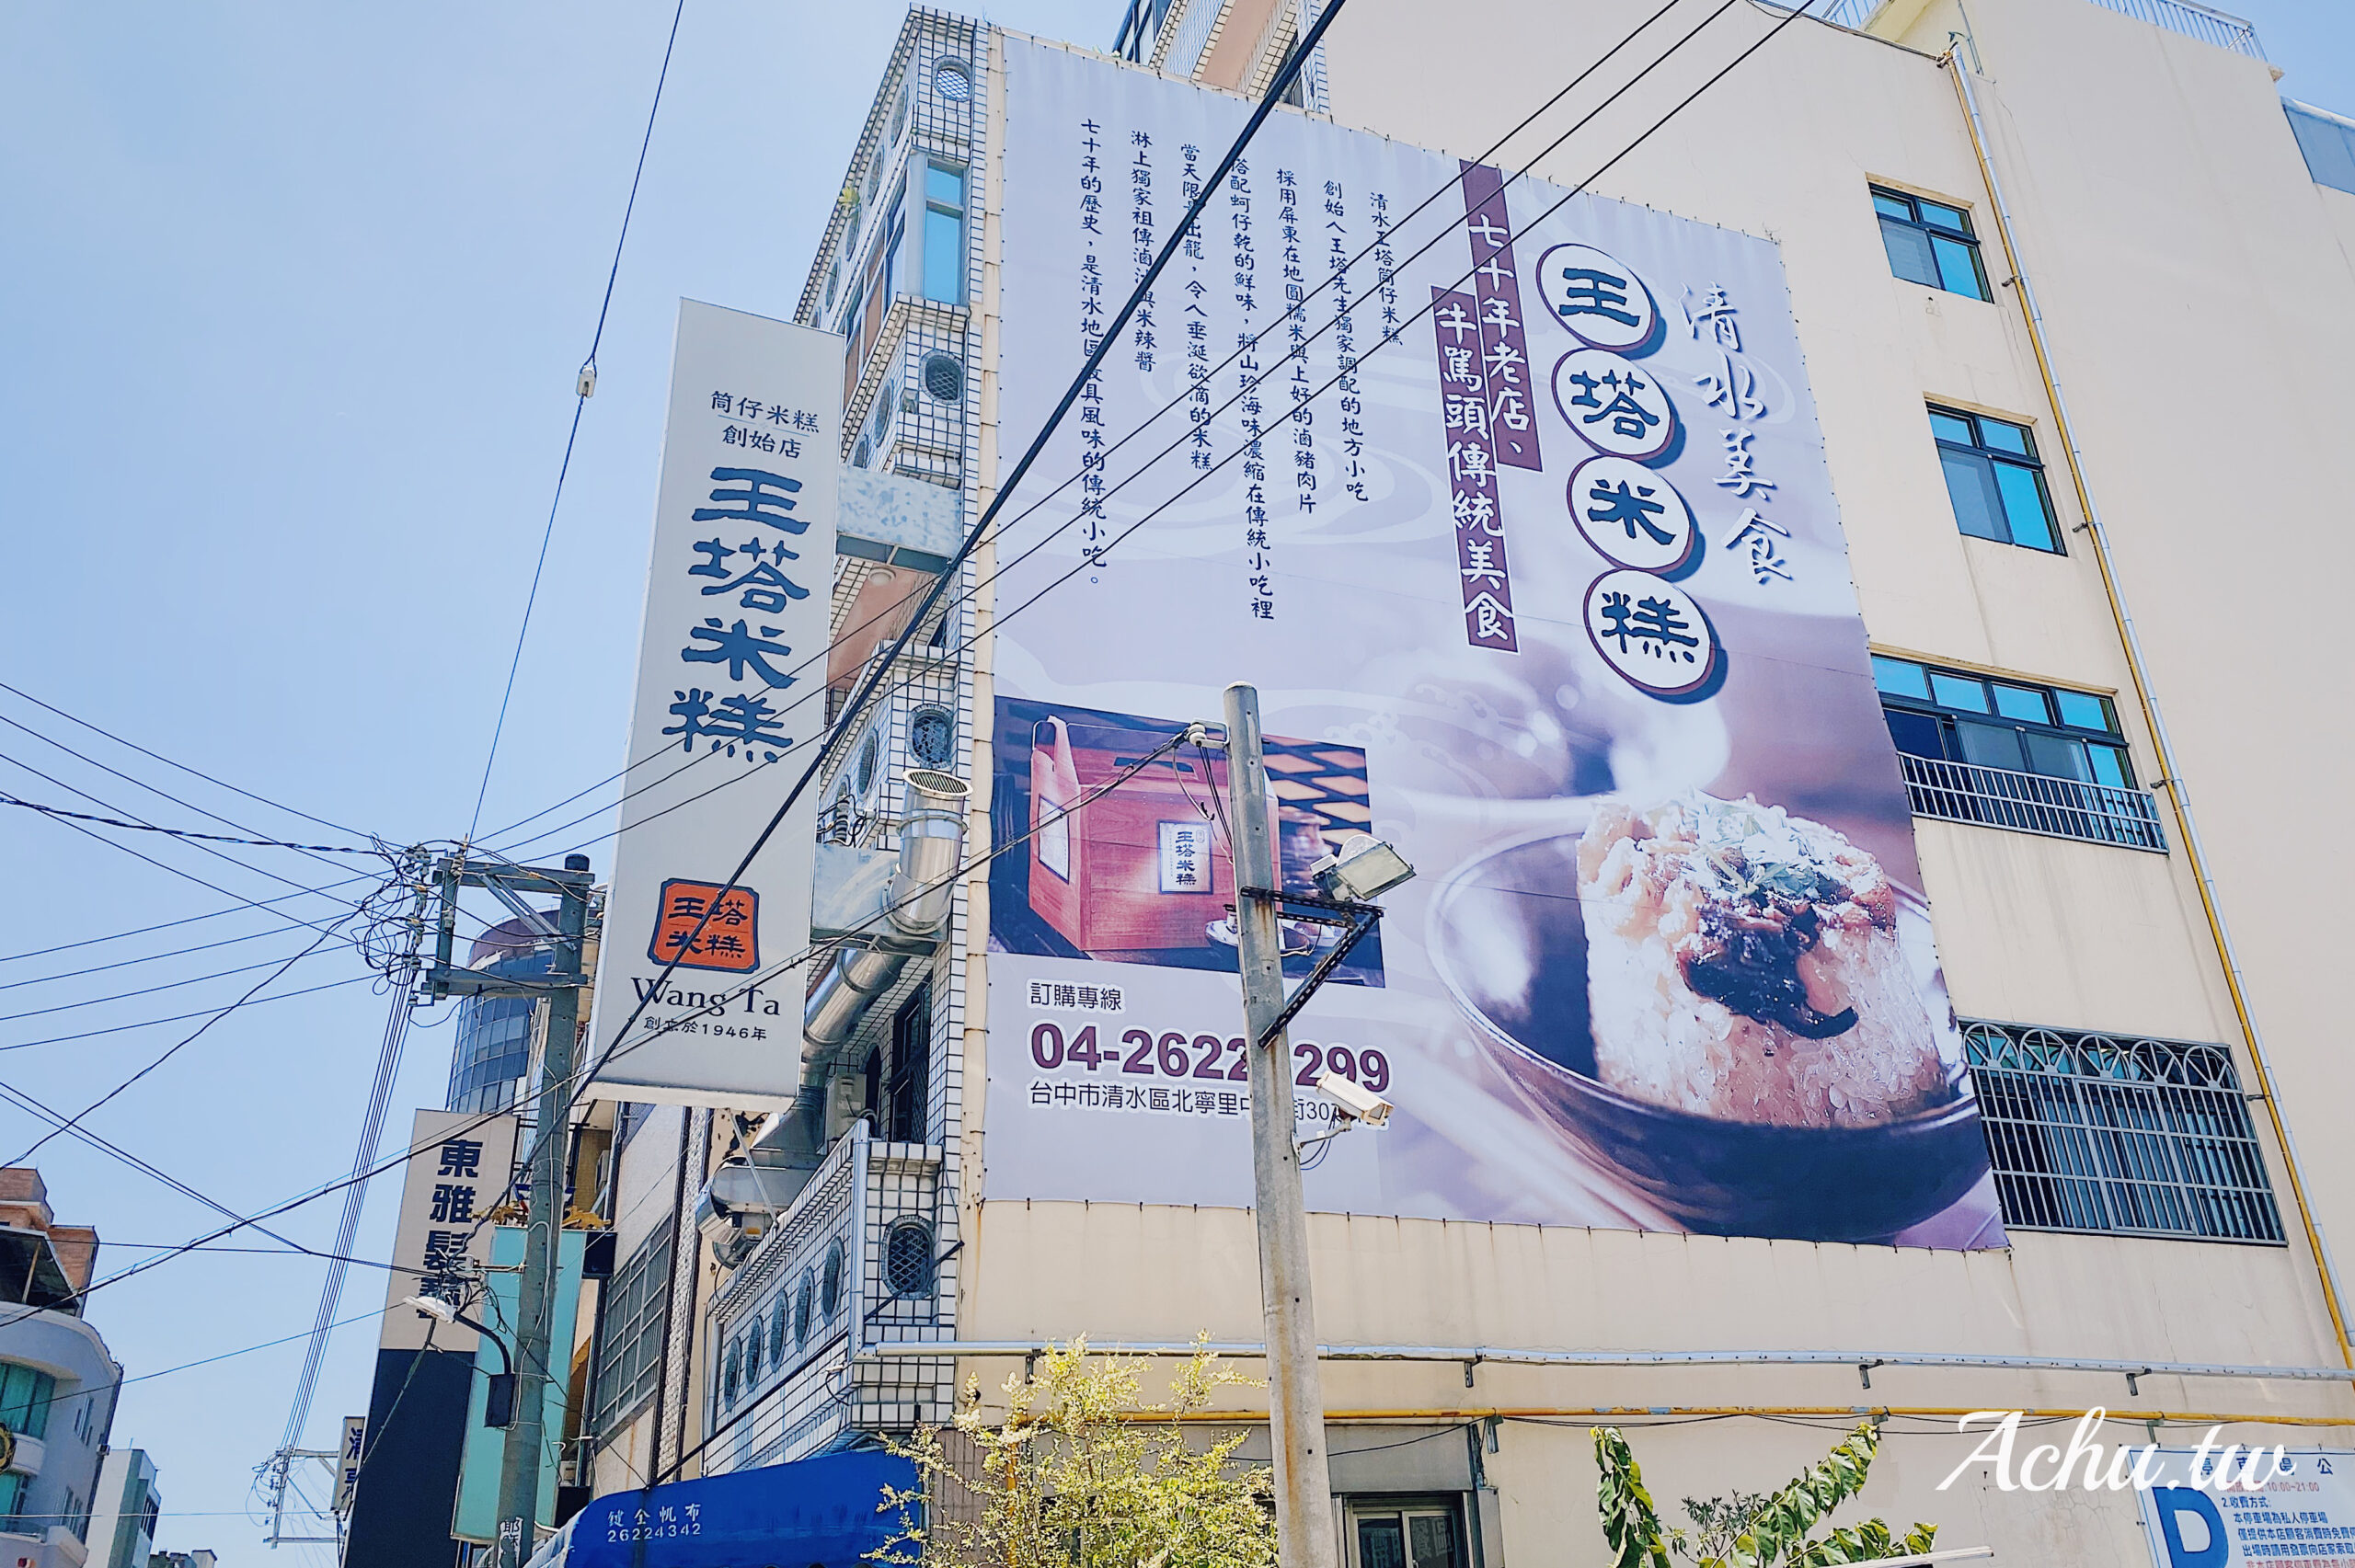 【台中清水美食】王塔米糕 清水知名米糕 使用獨家祖傳滷汁 傳承七十年的老店